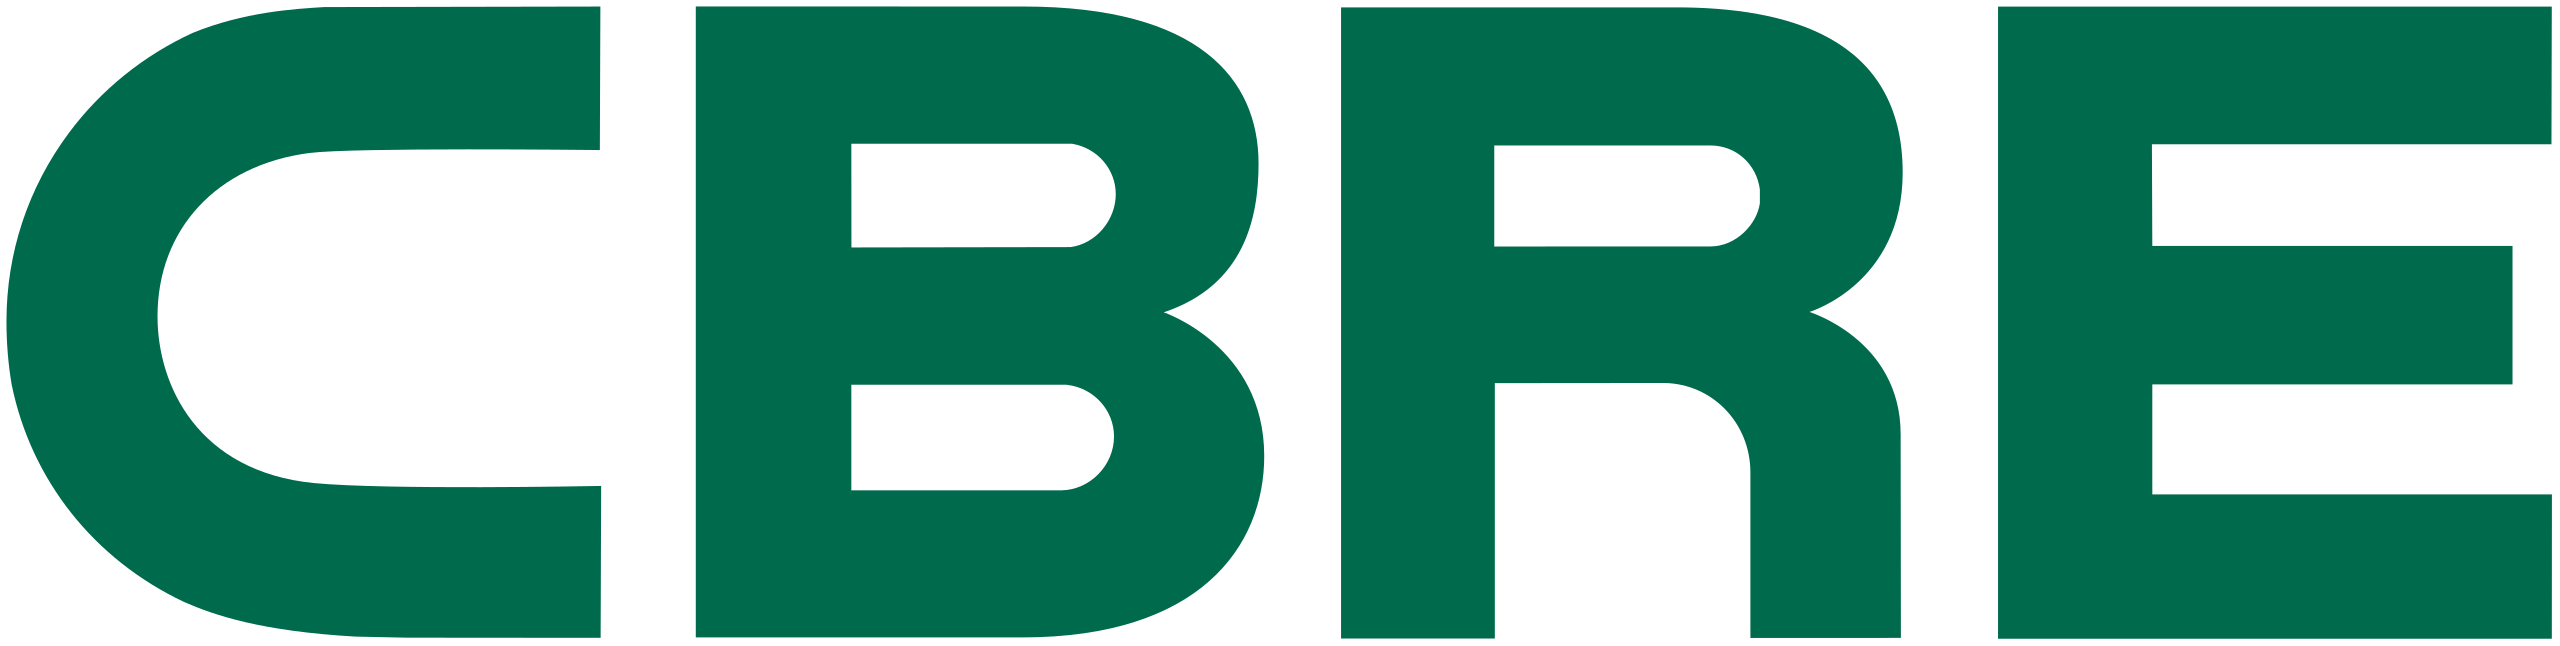 cbre group logo (till 2021).svg